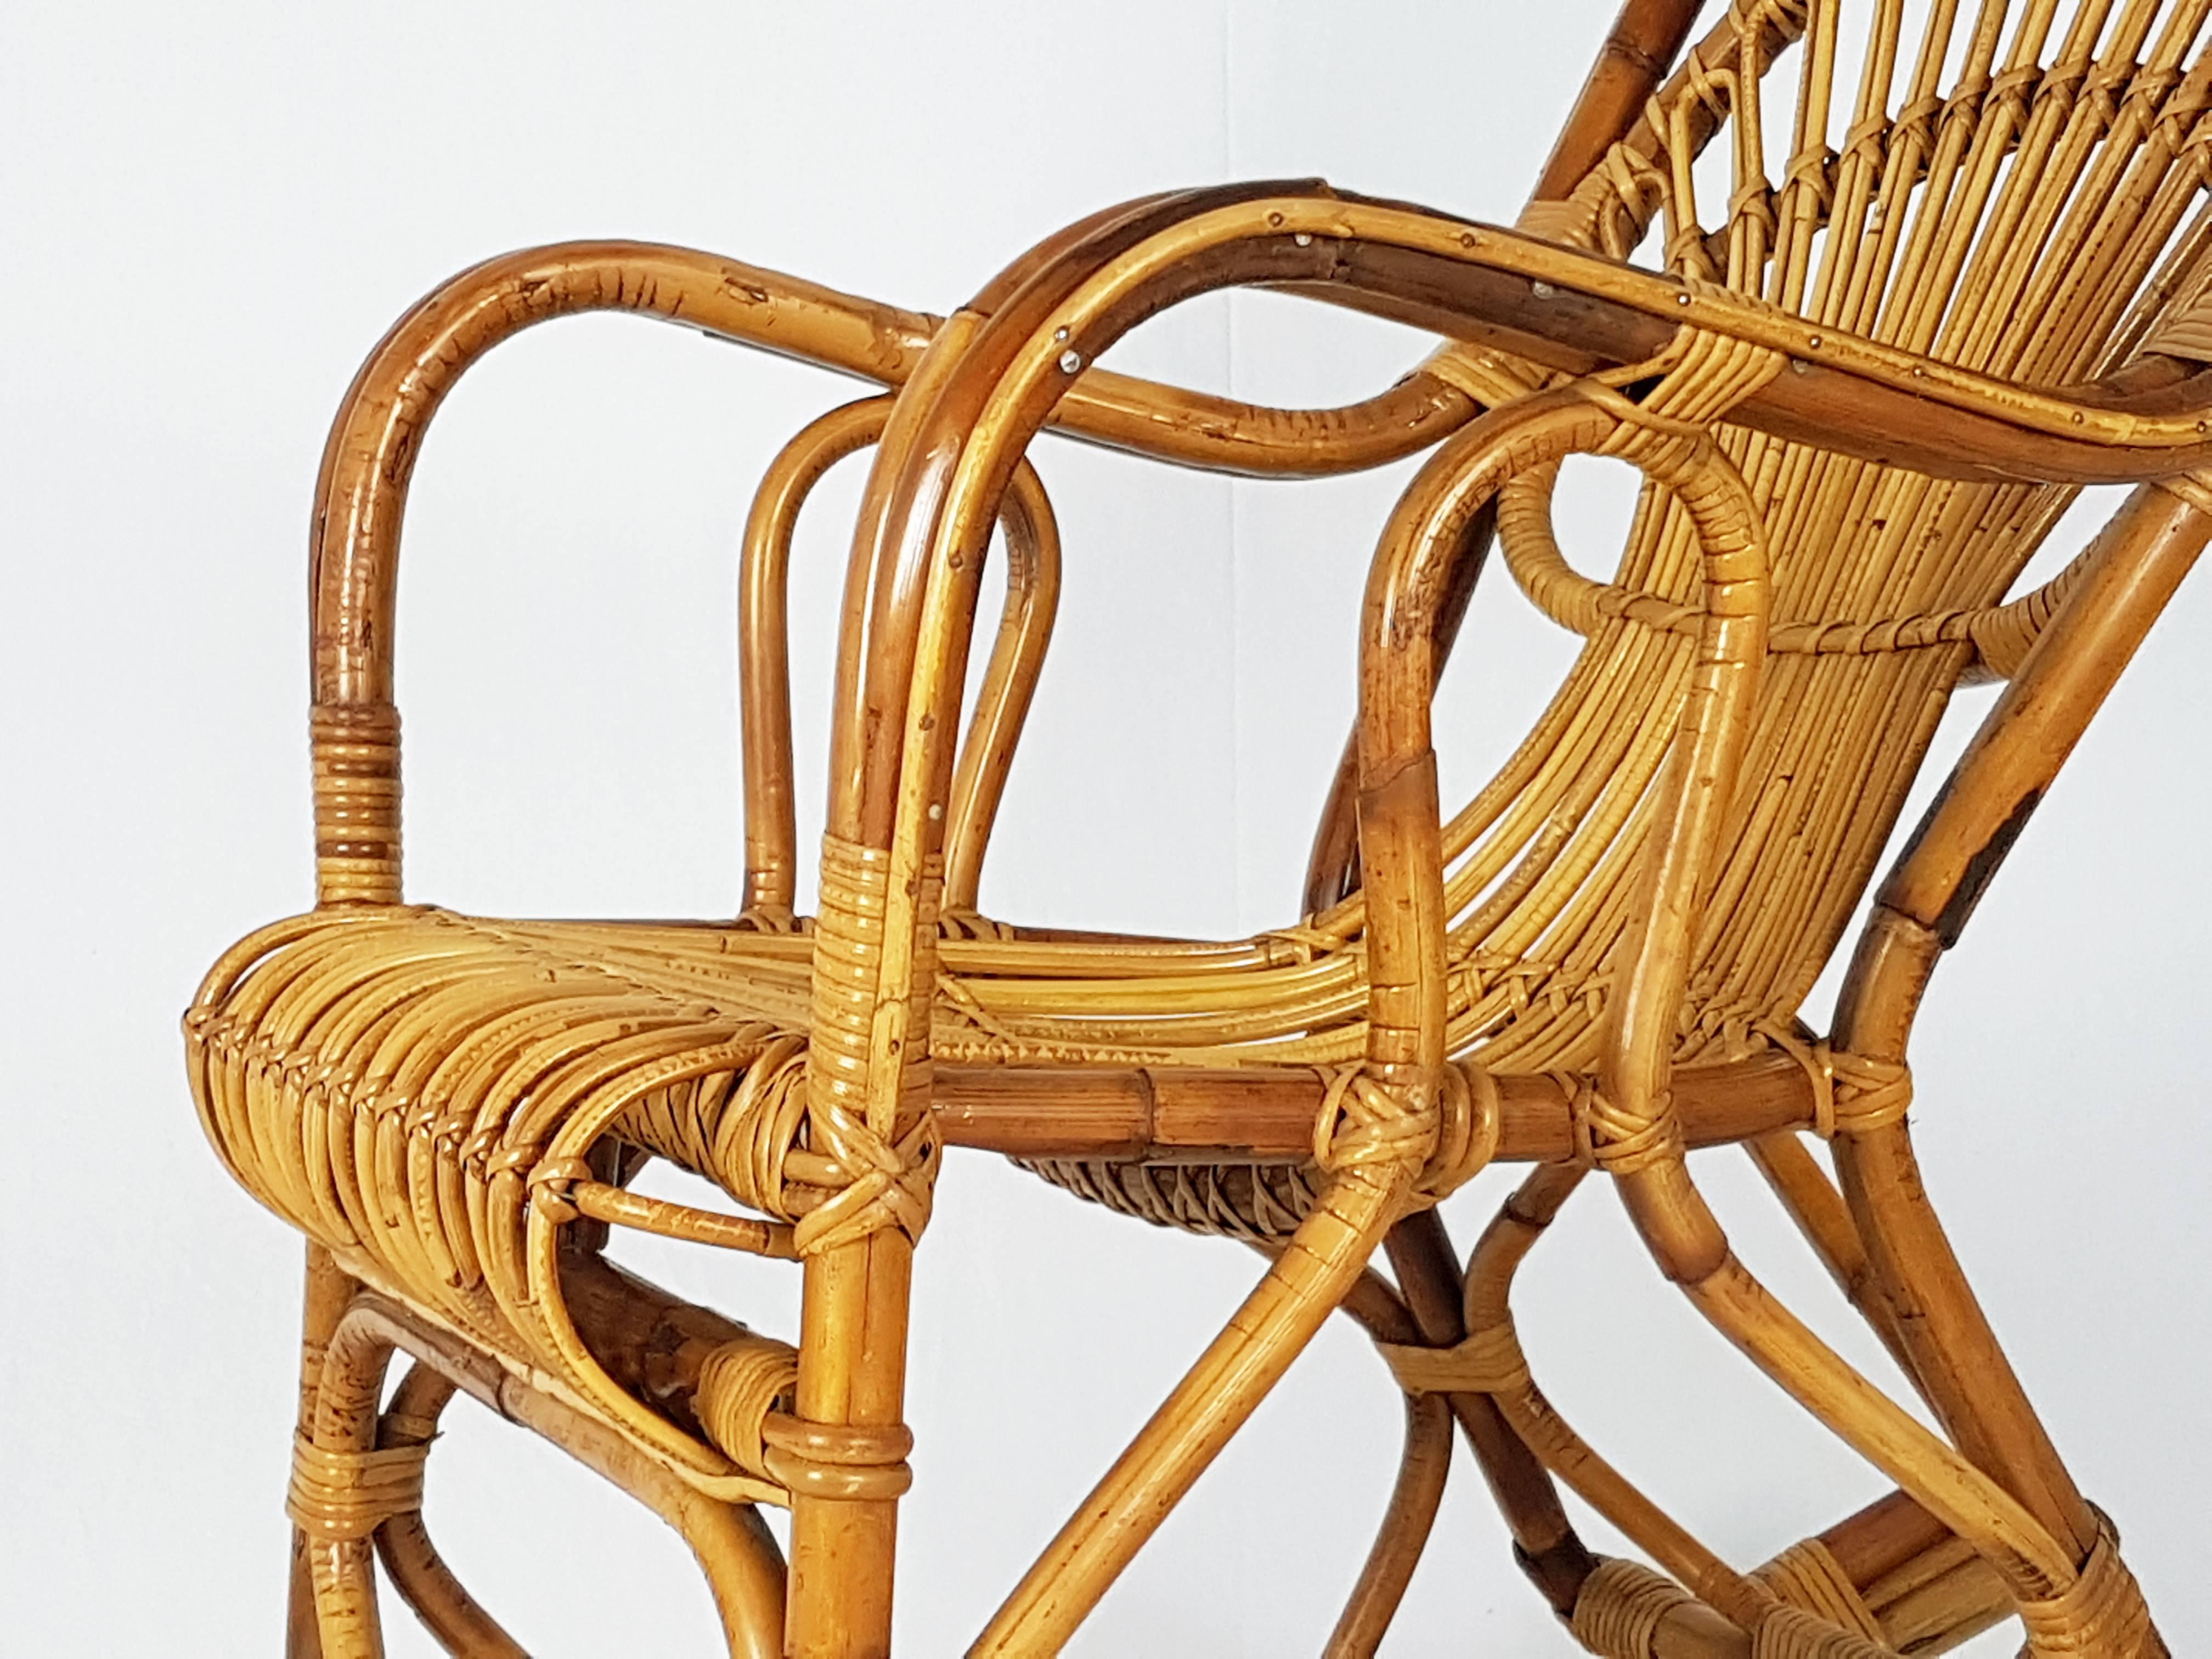 Cette magnifique chaise à bascule a été produite en Italie dans les années 1960. Il est fabriqué à la main en rotin et reste en très bon état vintage, quelques pertes de jonc près de la base comme le montre la photo. Légère usure conforme à l'âge et